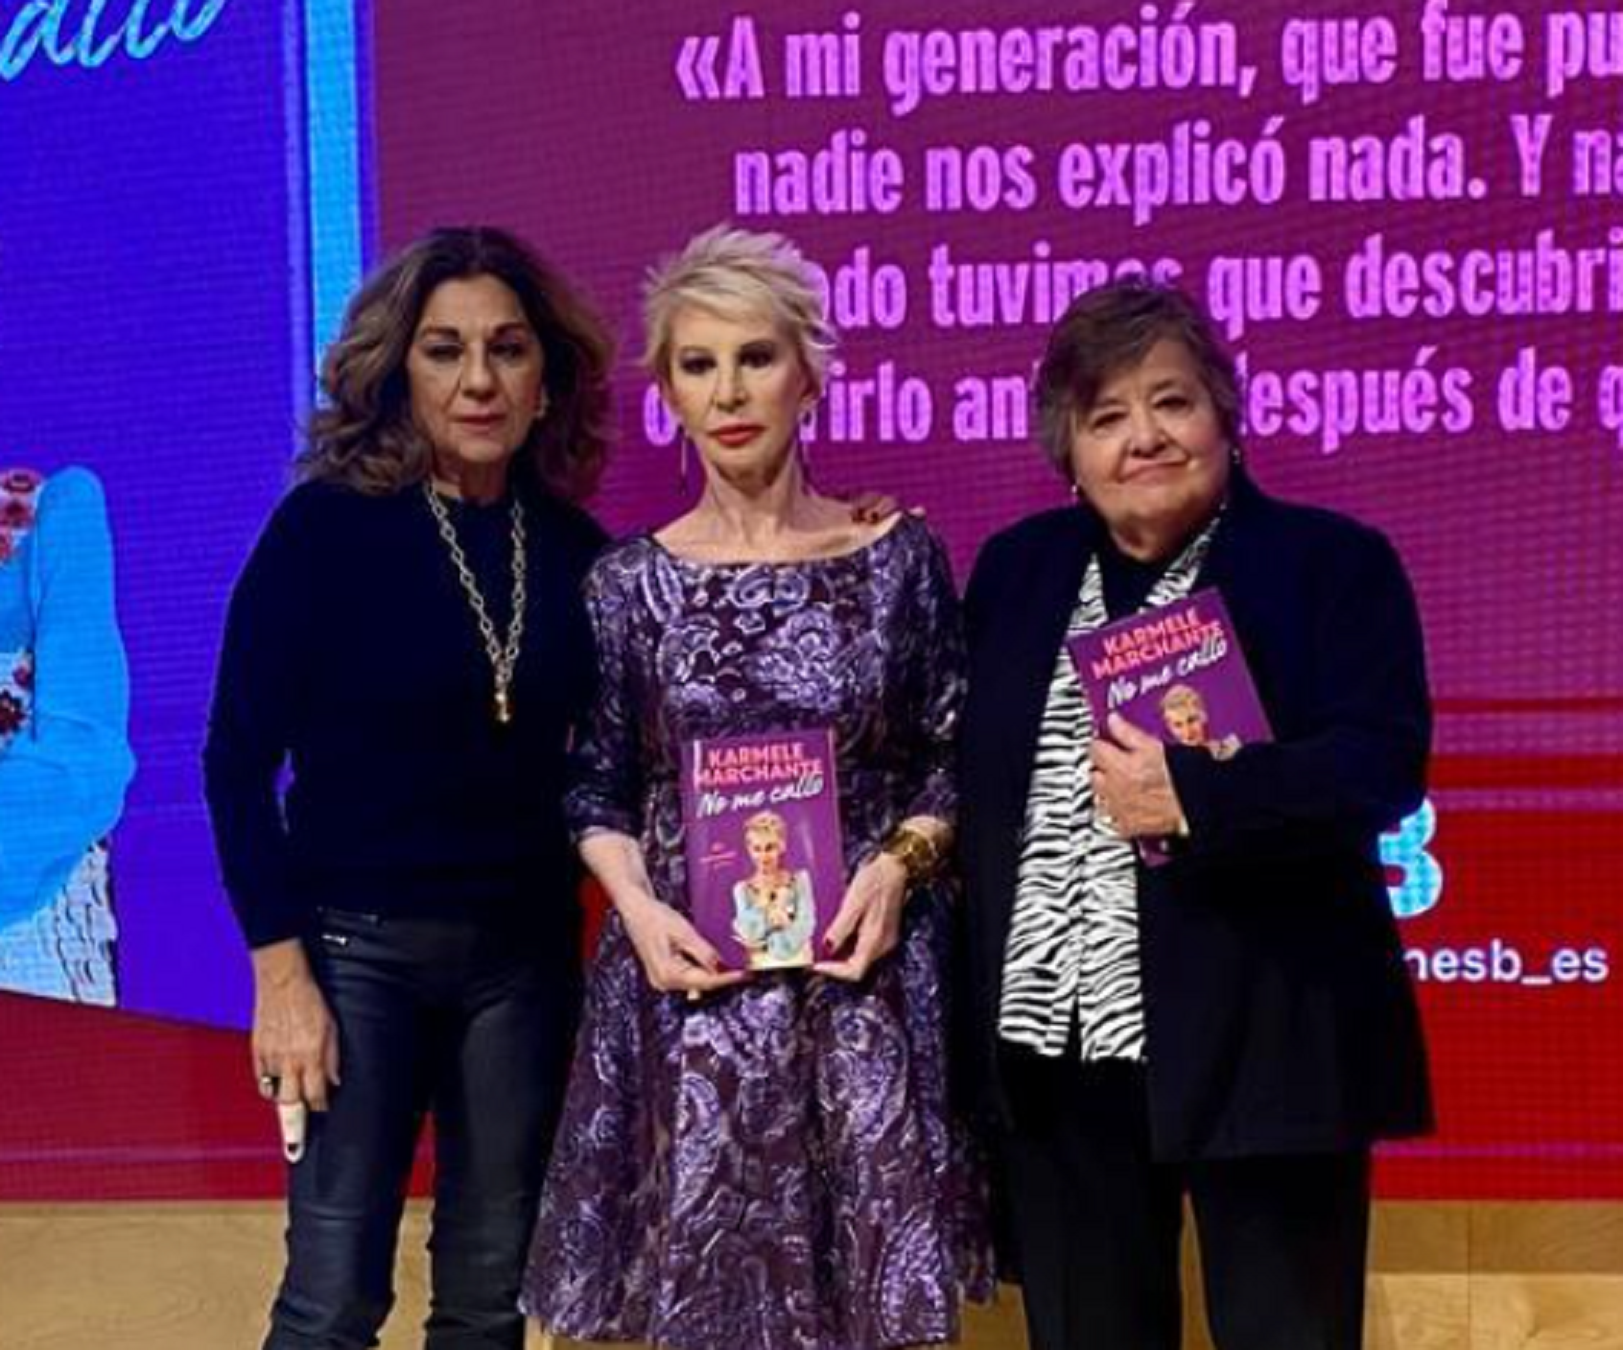 Karmele Marchante, Llolita Flores i Carmen Almeida, ahir